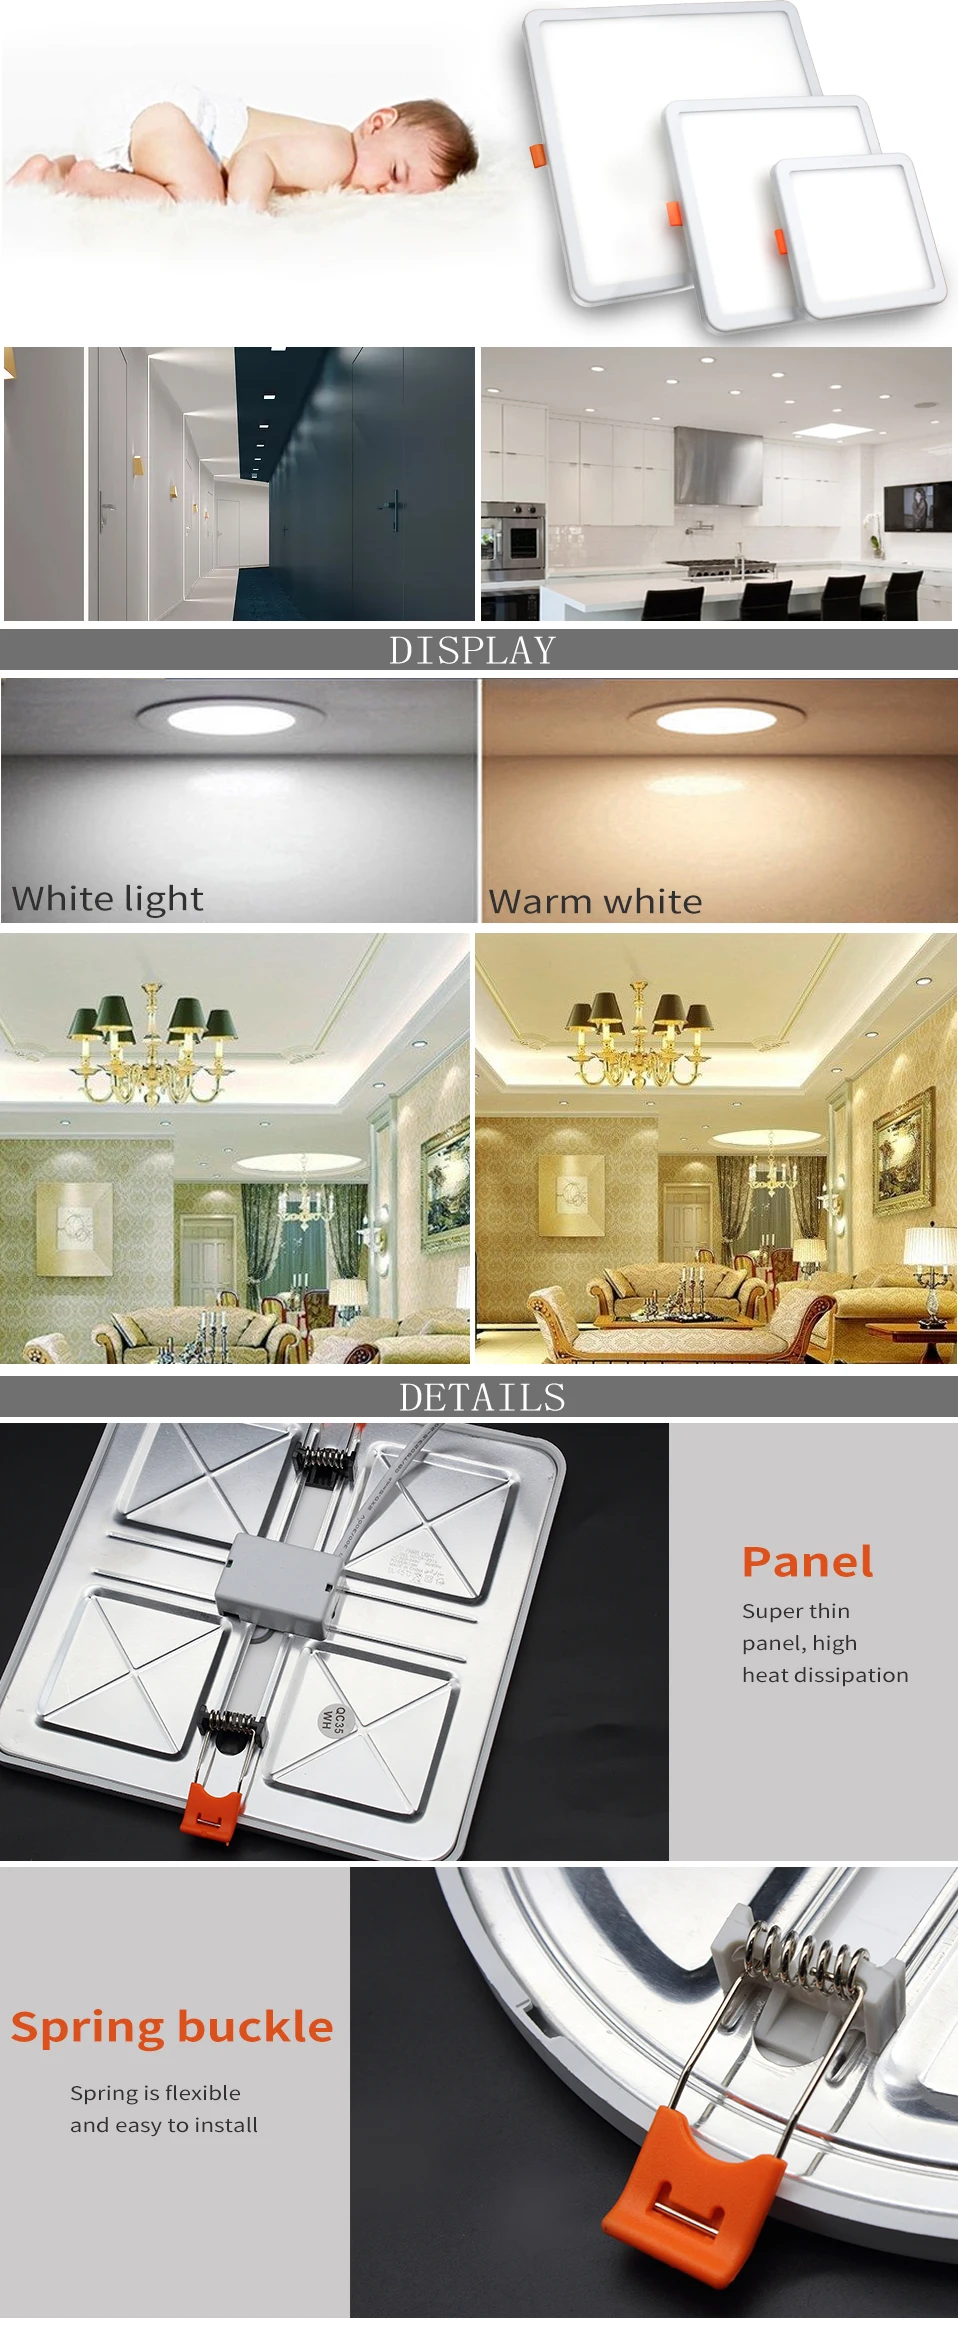 DINGDIAN светодиодный светильник панели 220V поверхностного монтажа квадратная/круглая алюминиевая лампа для потолка гостиной спальни 6W 8W 15W 20W вниз свет